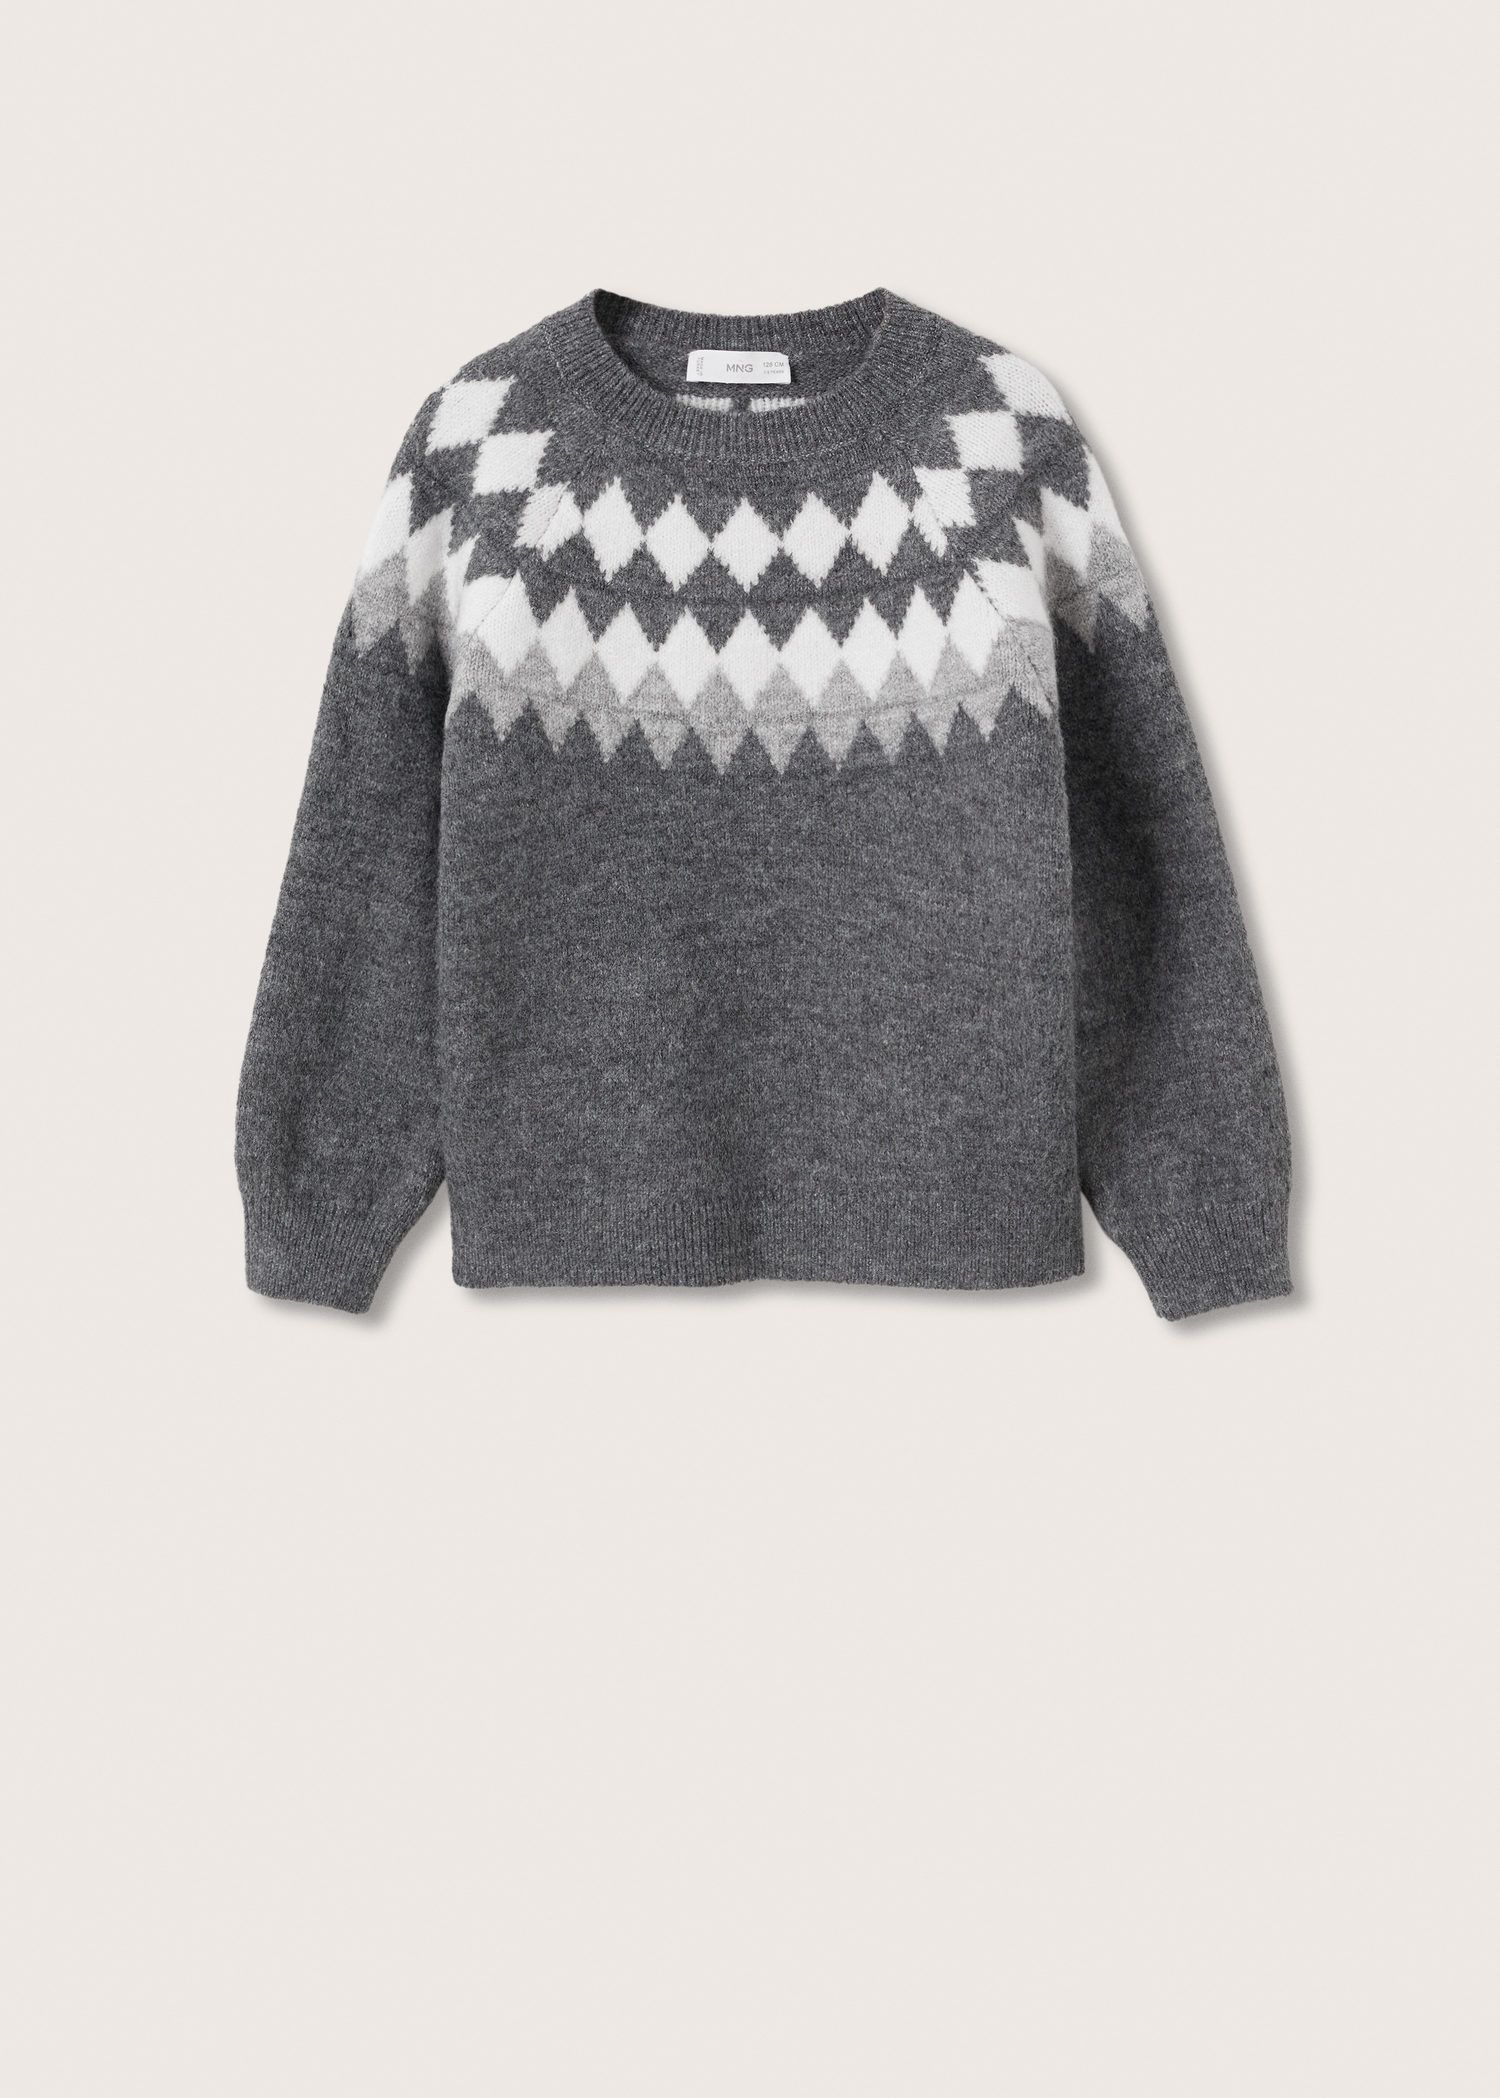 Mango Jacquard Knitted Sweater